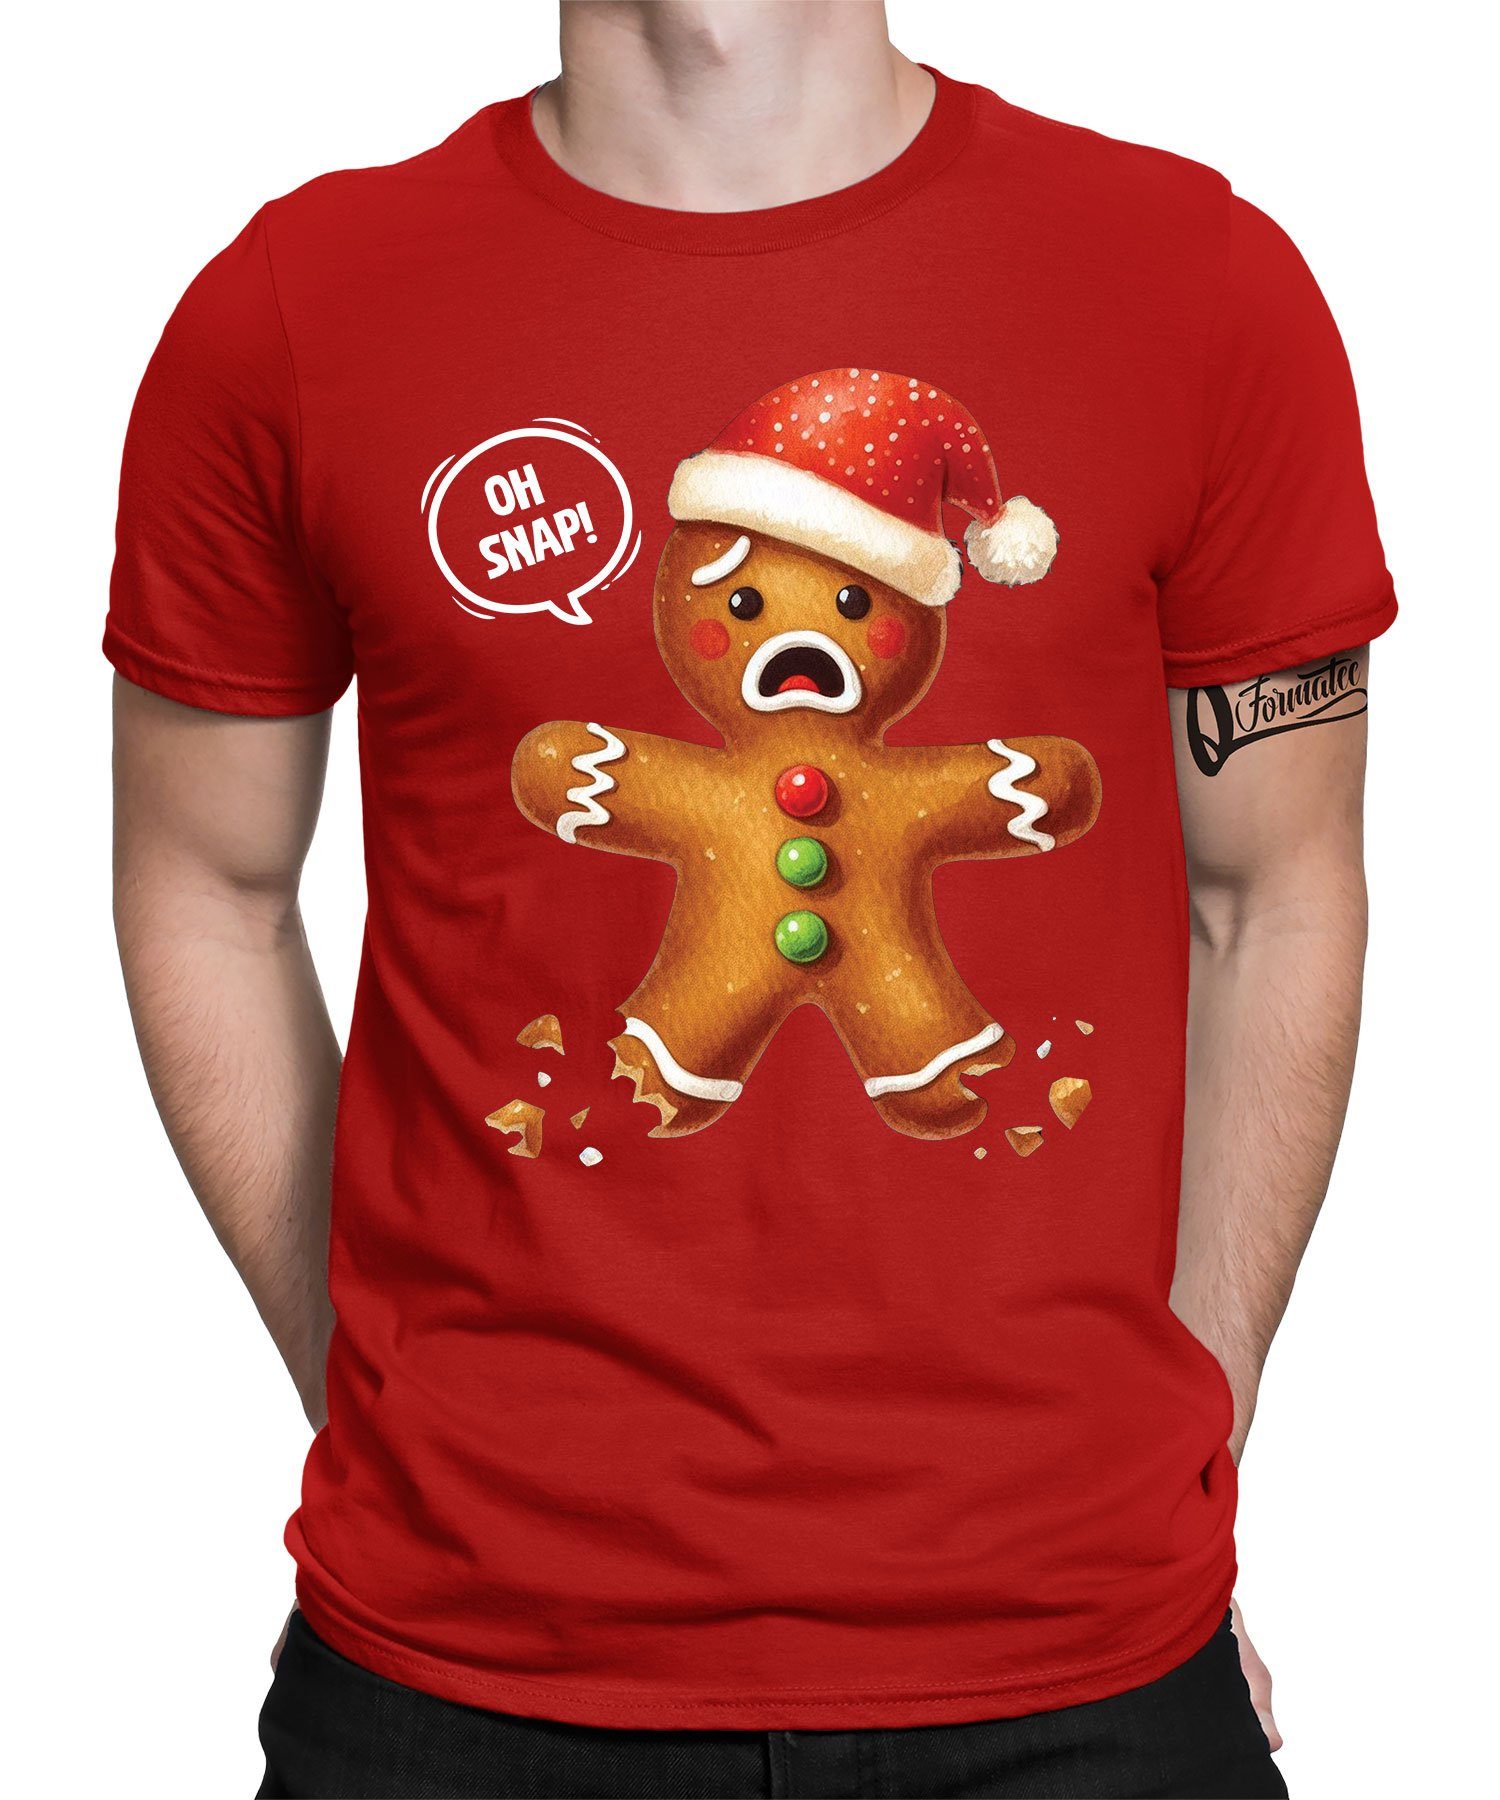 Snap (1-tlg) Kurzarmshirt - Rot Nikolaus T-Shirt Formatee Oh Weihnachten Weihnachtsgeschenk Quattro Herren Keks